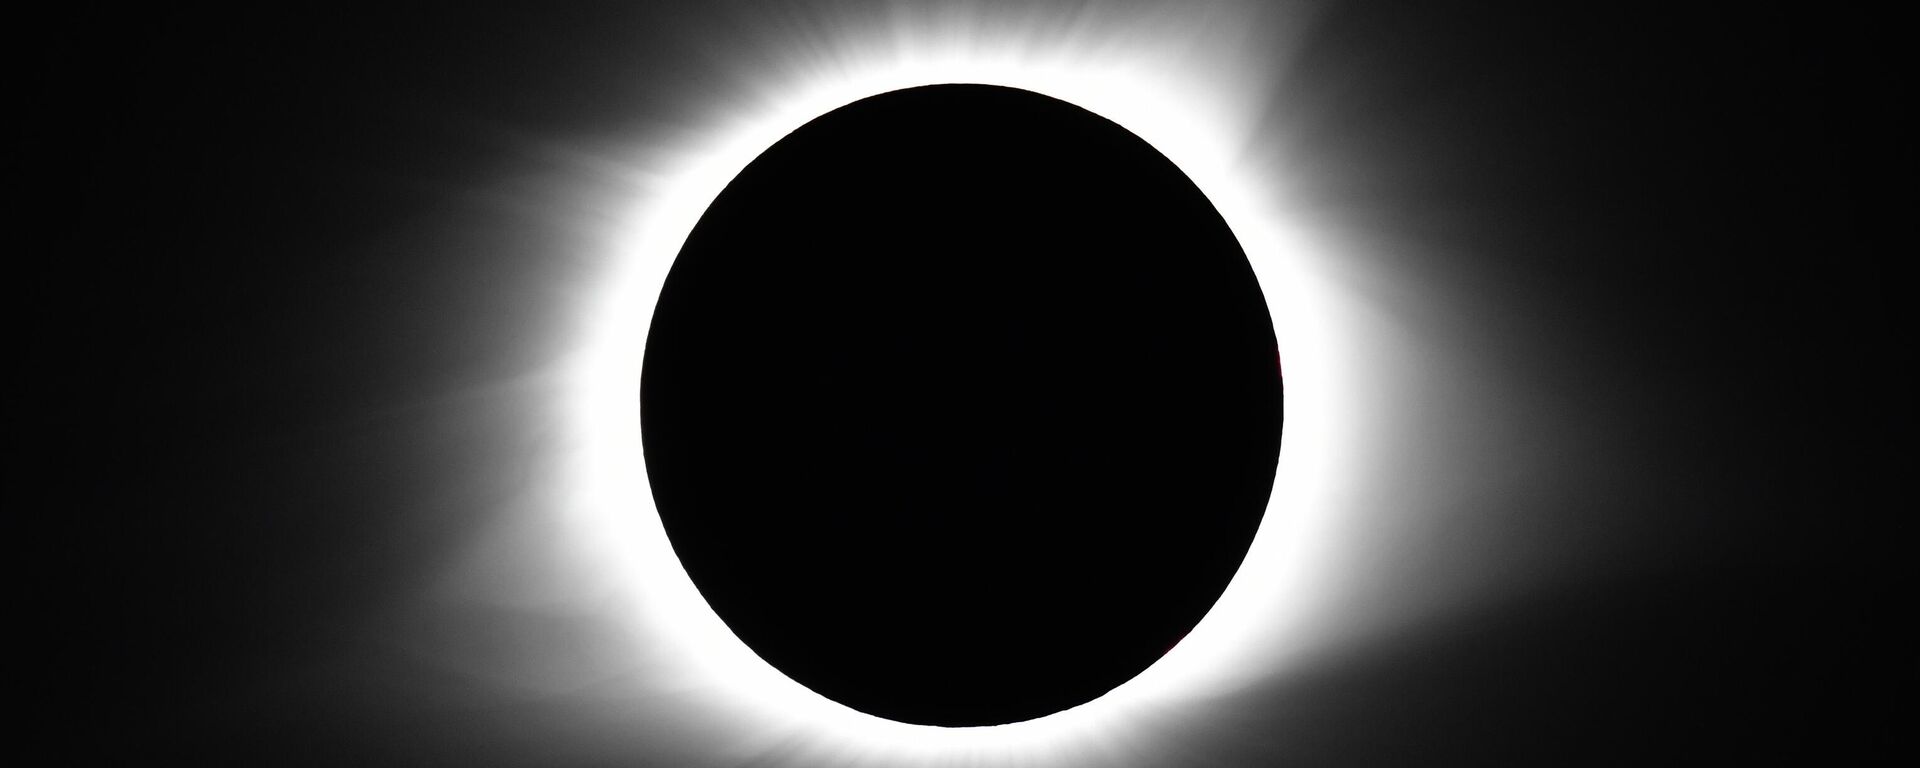 El eclipse solar que ocurrirá el 8 de abril de 2024 se verá en México. - Sputnik Mundo, 1920, 05.04.2024